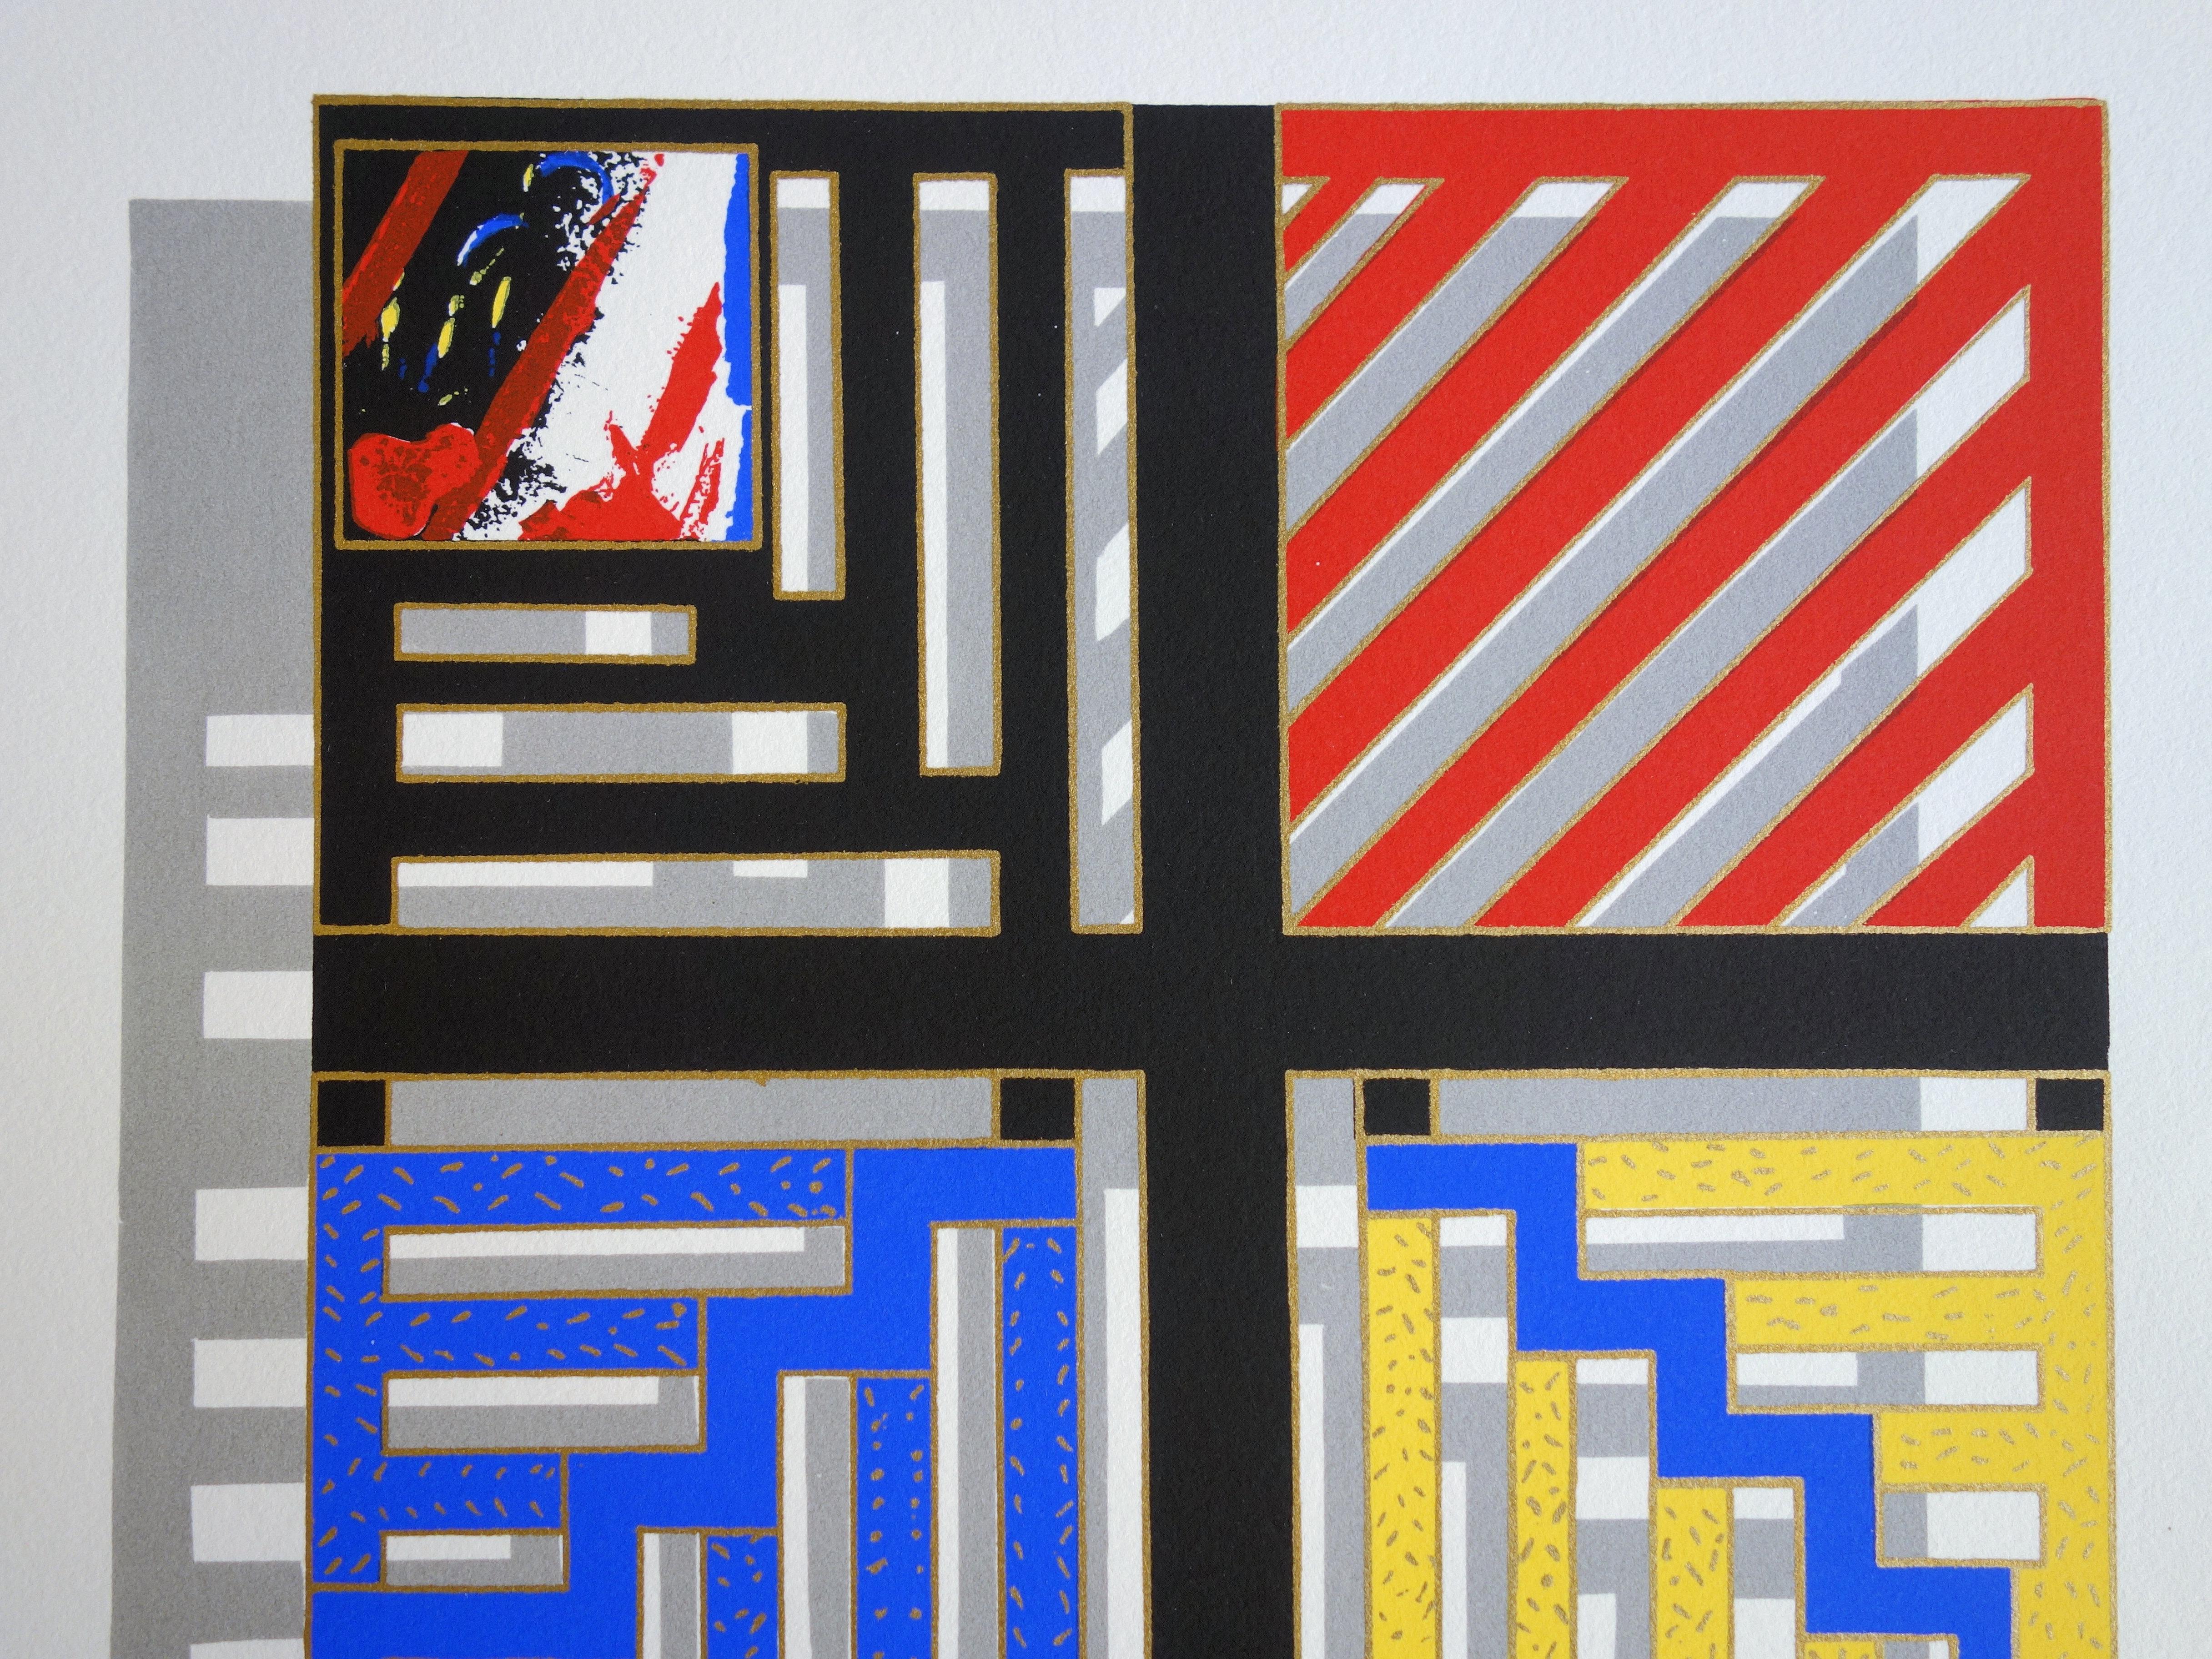 Farbefarbenes geometrisches Muster - Original handsignierter Siebdruck /60ex (Grau), Abstract Print, von Nivése